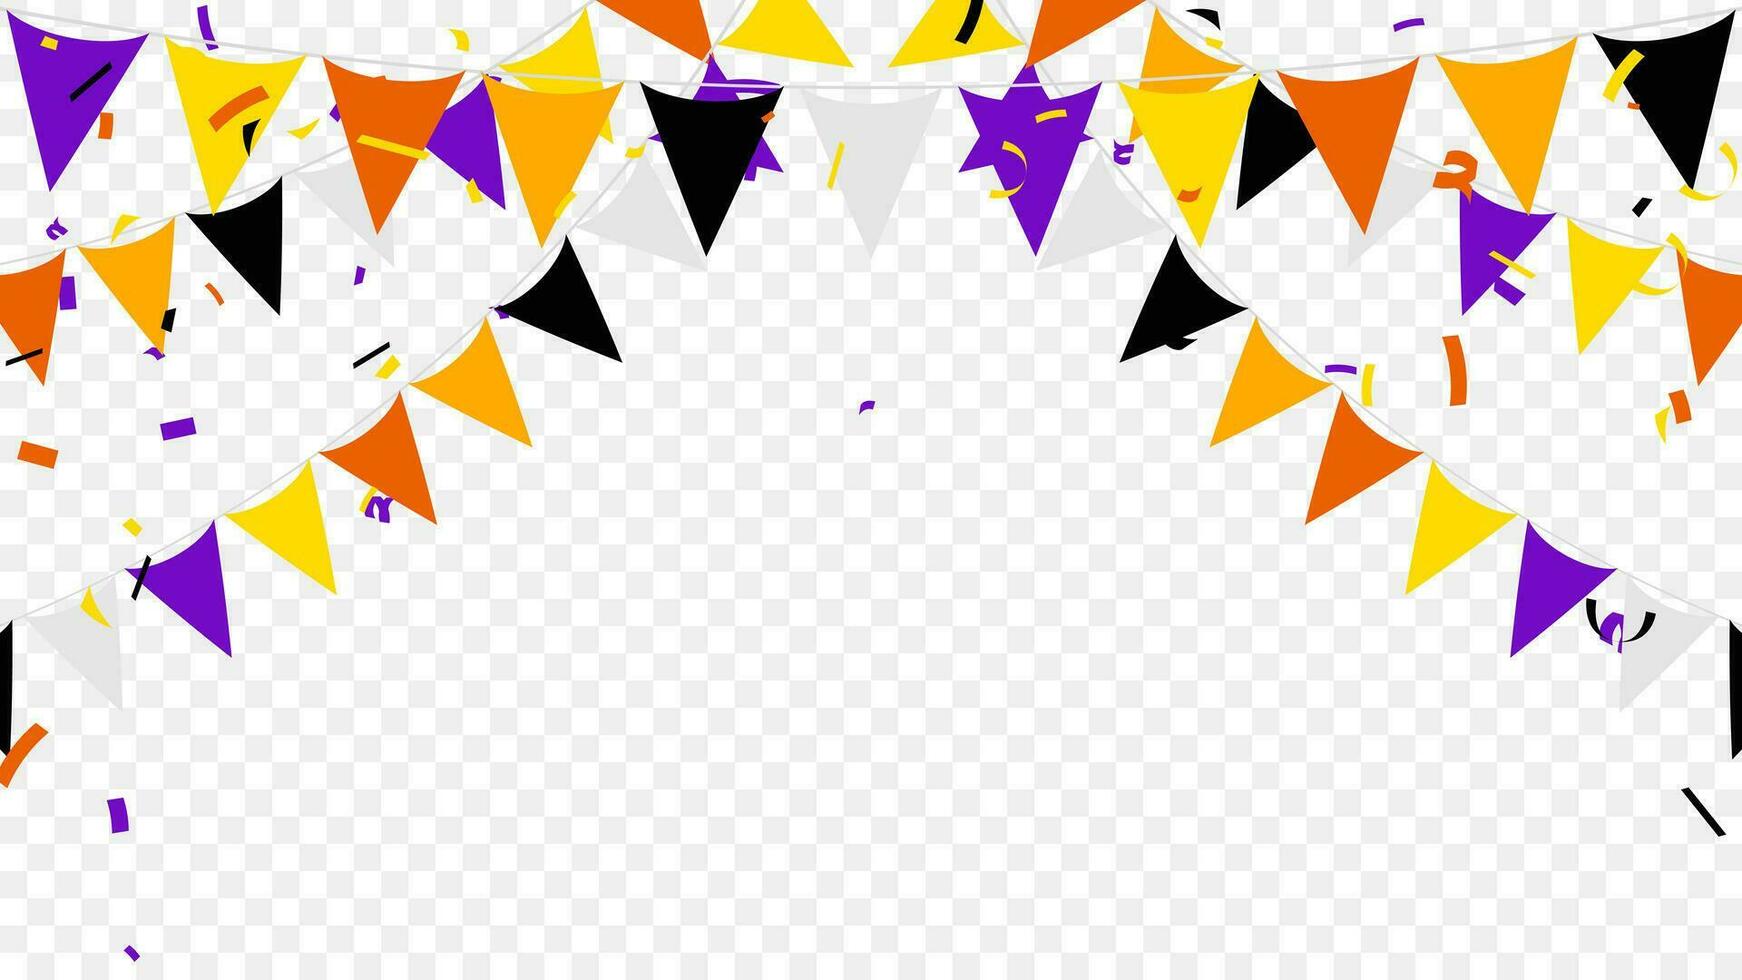 Víspera de Todos los Santos banderas guirnaldas con naranja, amarillo, púrpura, gris y negro aislado en antecedentes. vector ilustración